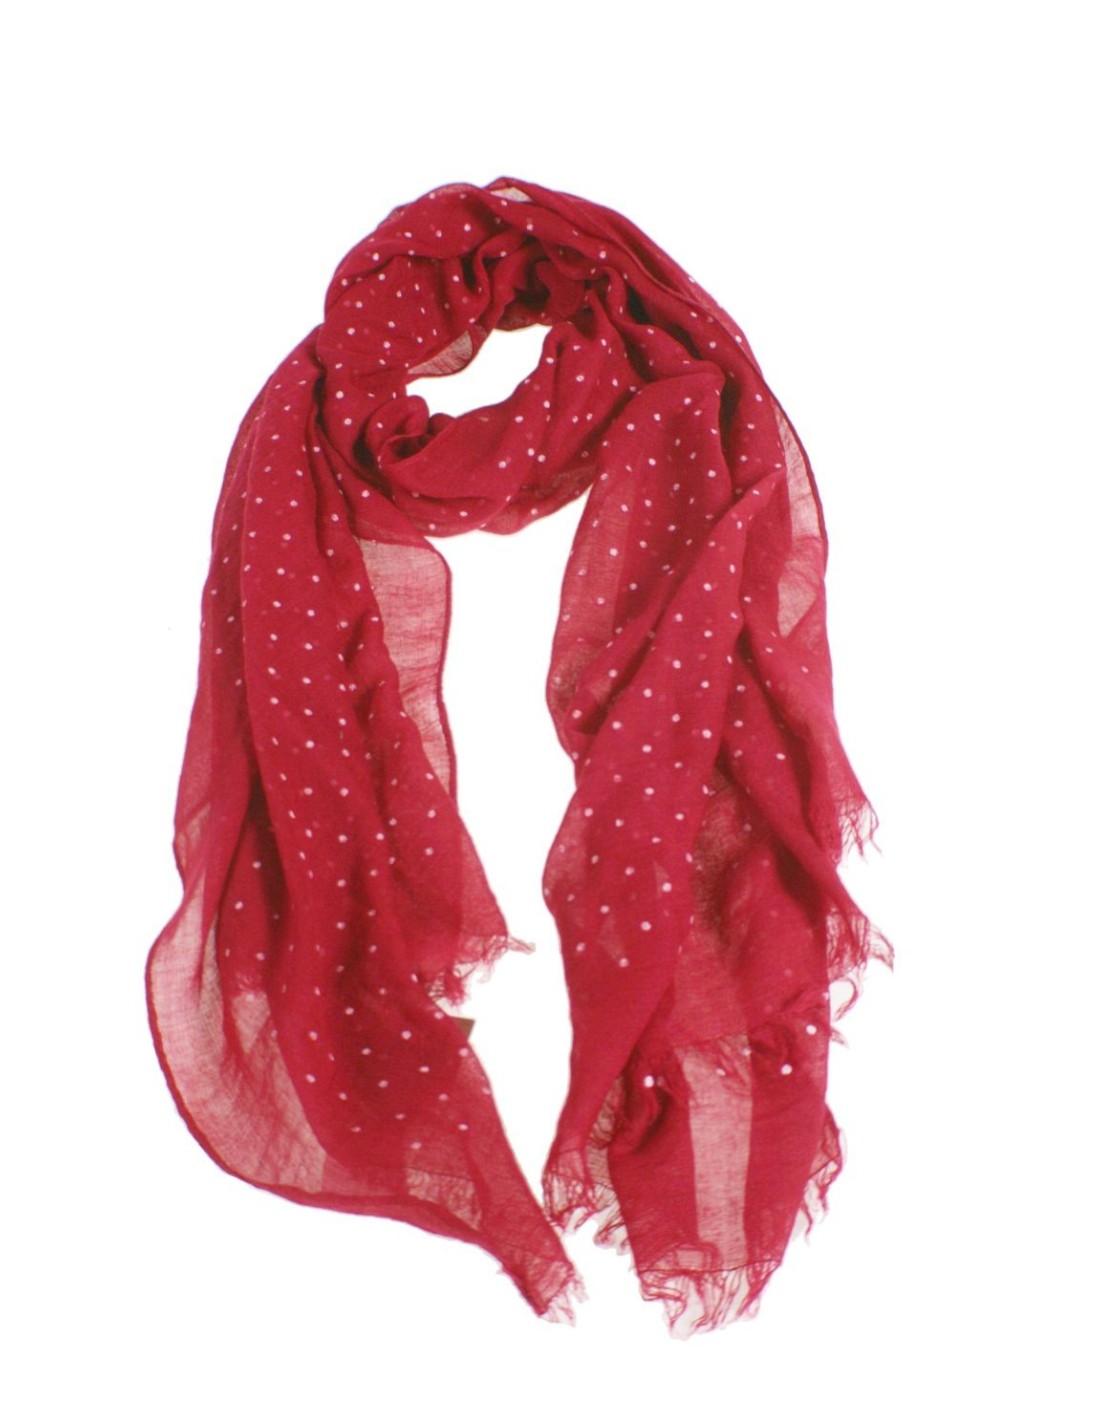 Bufanda foulard básico color rojo estampado topos blancos complemento para tu look regalo original funcional moda mujer